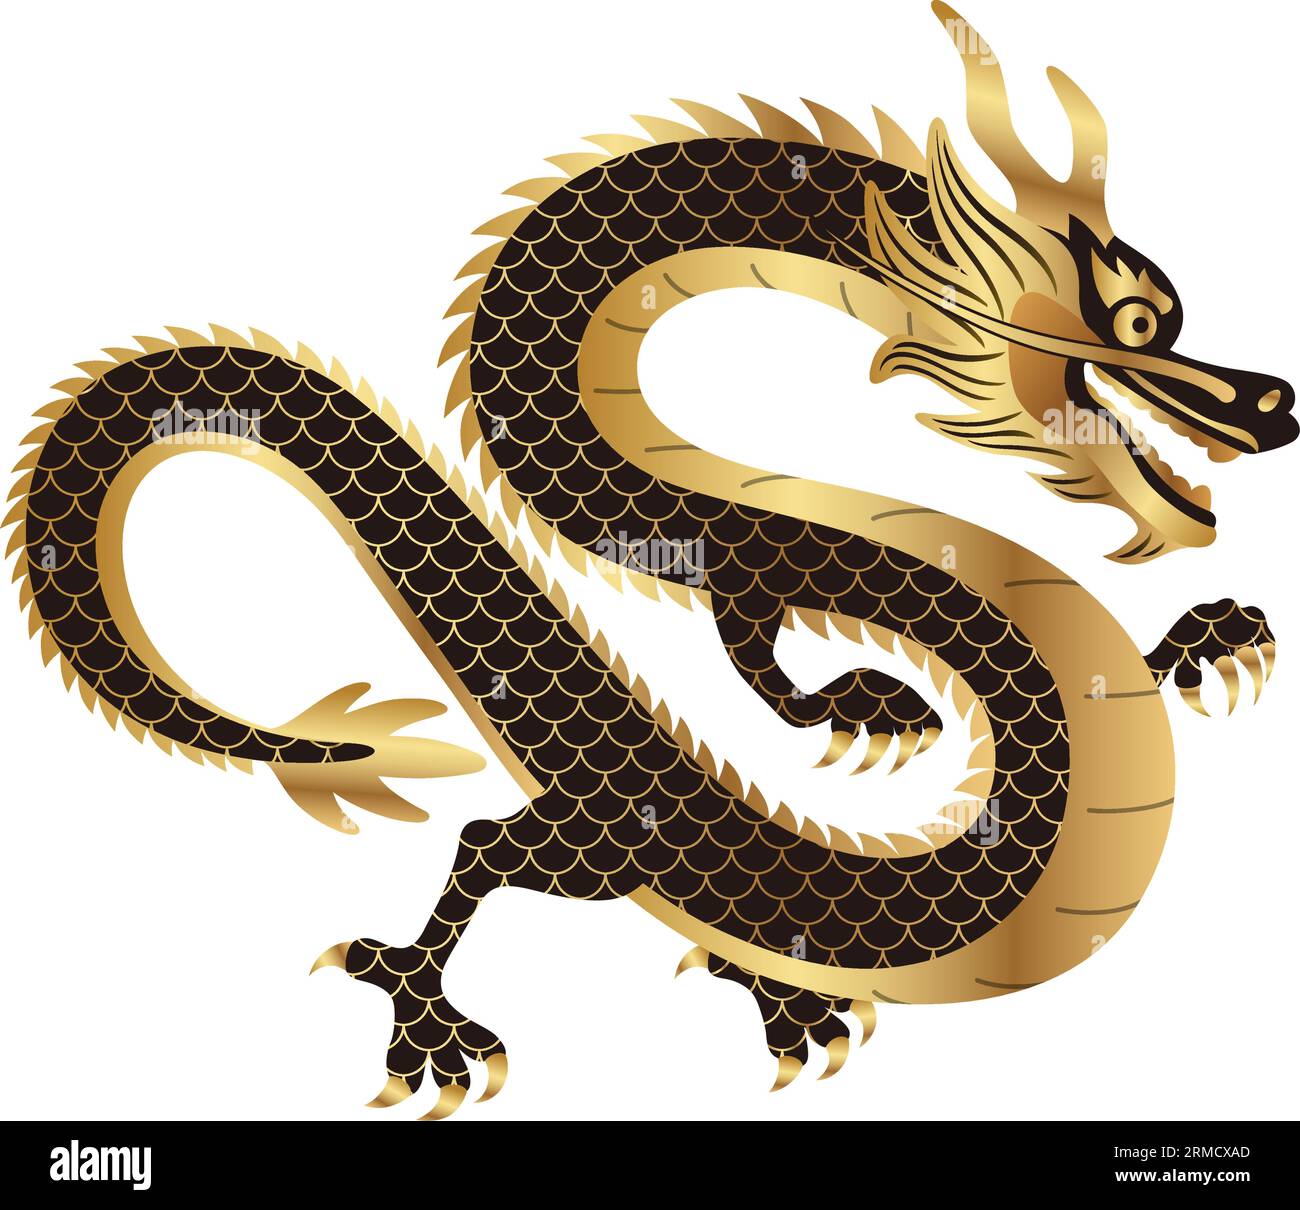 Illustrazione del simbolo Zodiaco Vector Year of the Dragon isolata su sfondo bianco. Illustrazione Vettoriale